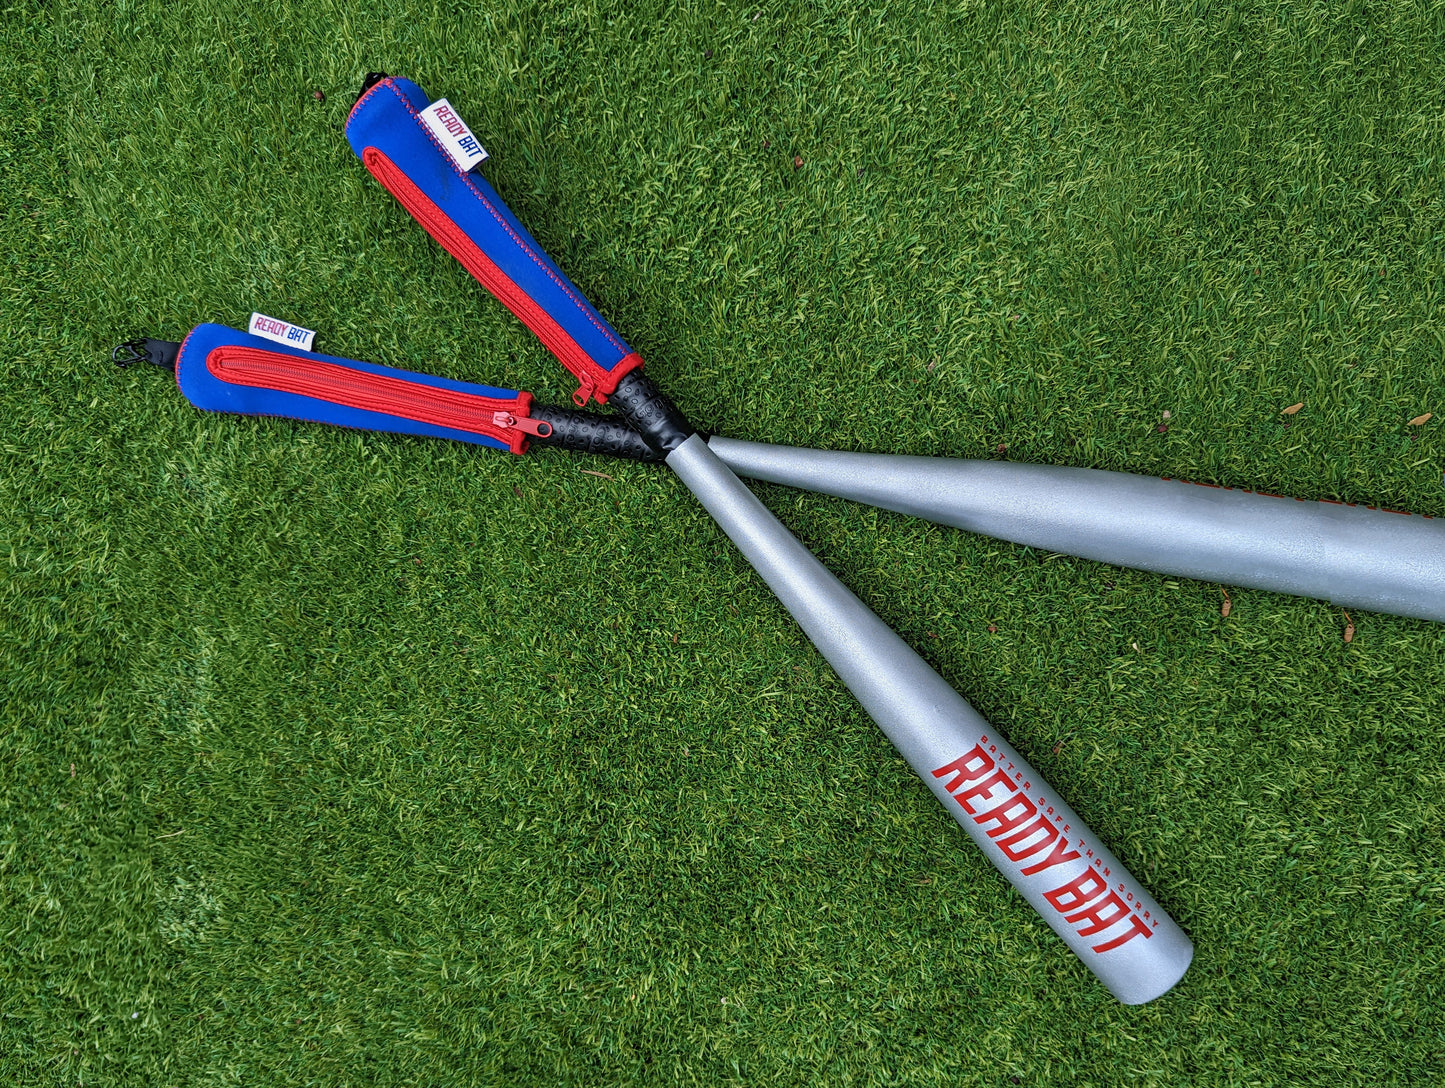 Little league baseball bat handle cover. Baseball accessory. Little league baseball bat cover.